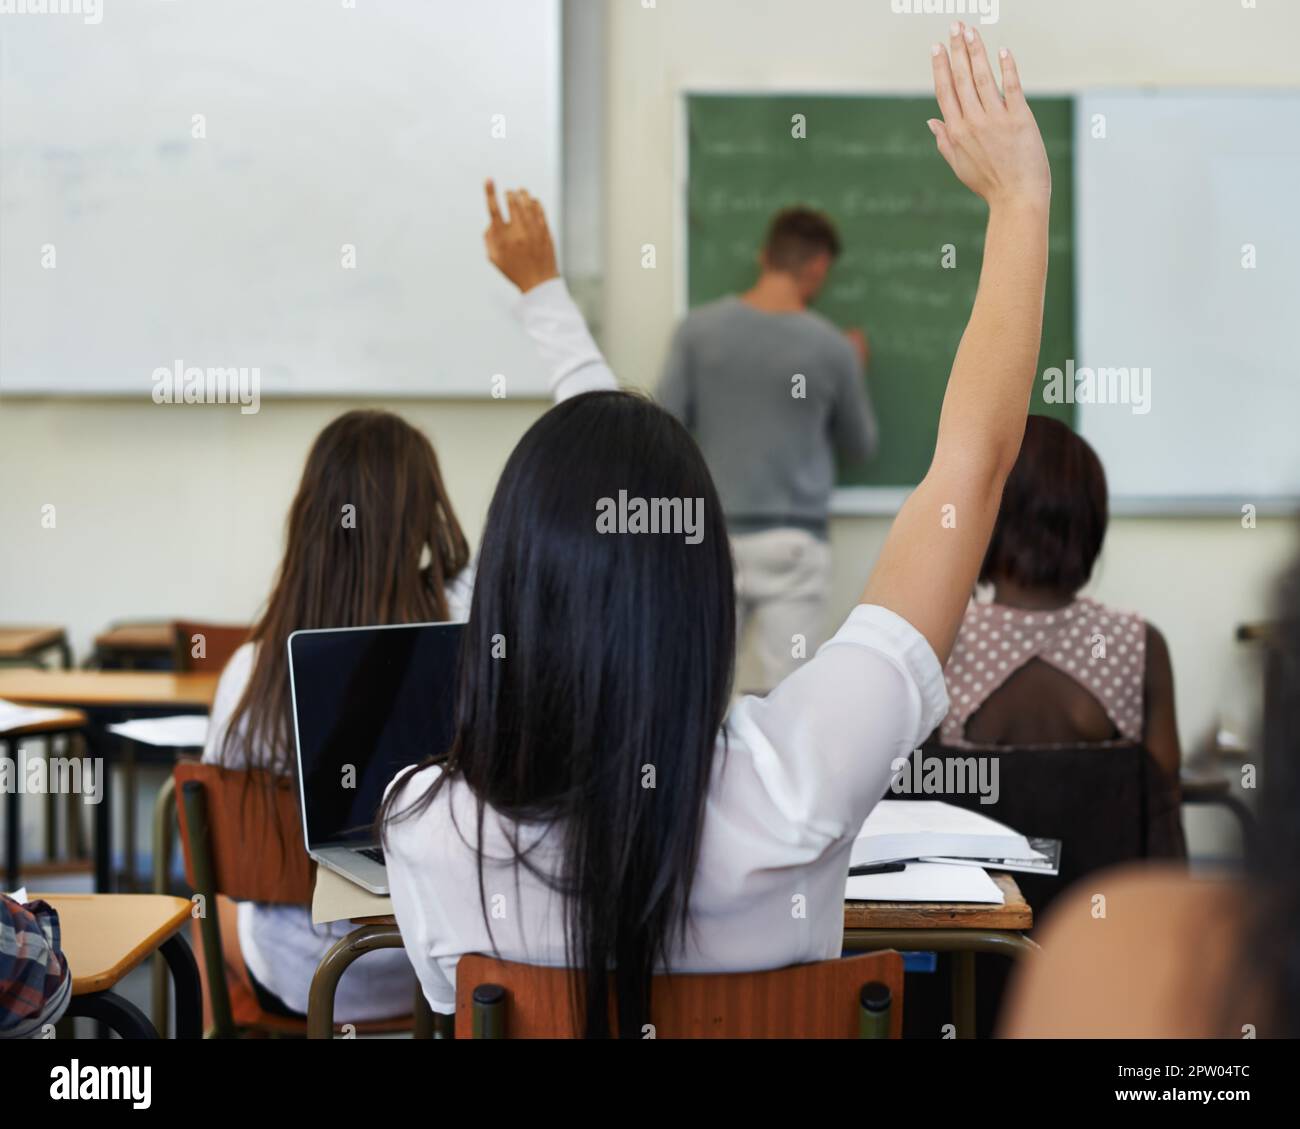 Ho una domanda... Una studentessa che solleva la mano per fare una domanda durante la lezione Foto Stock